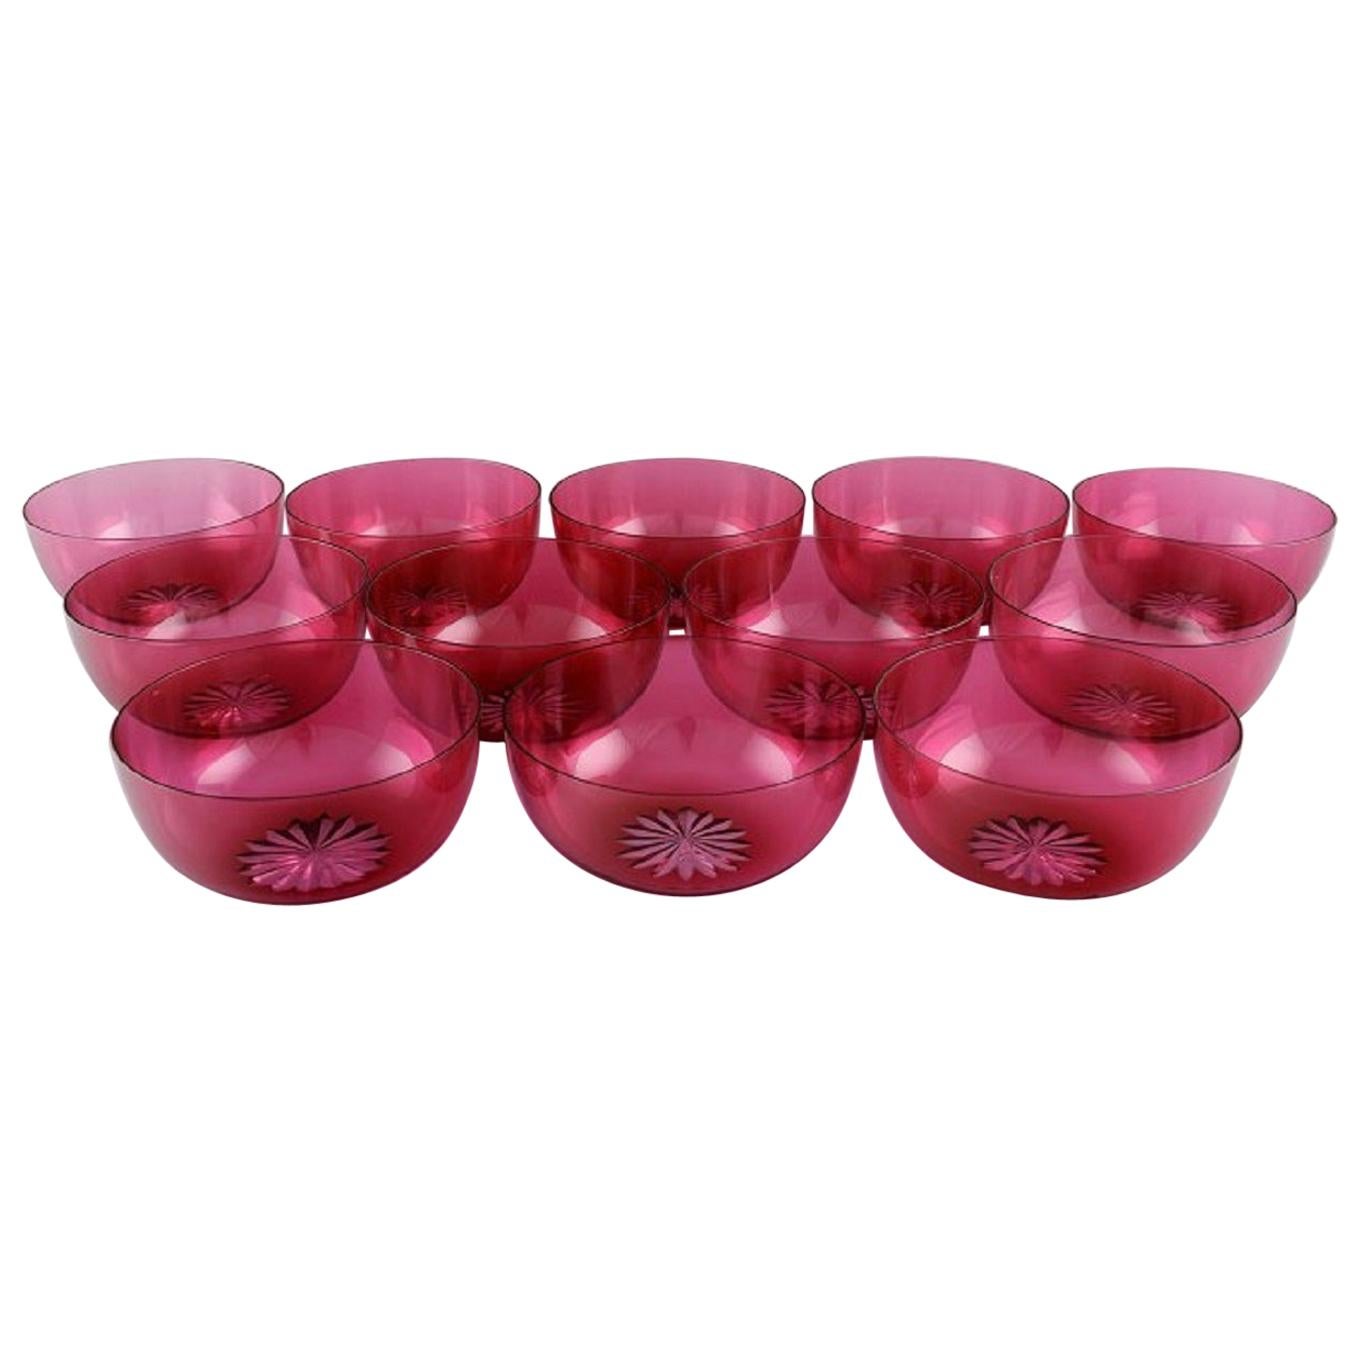 Set of Twelve Holmegaard Bowls in Pink Art Glass, Danish Design, Mid-20th C For Sale